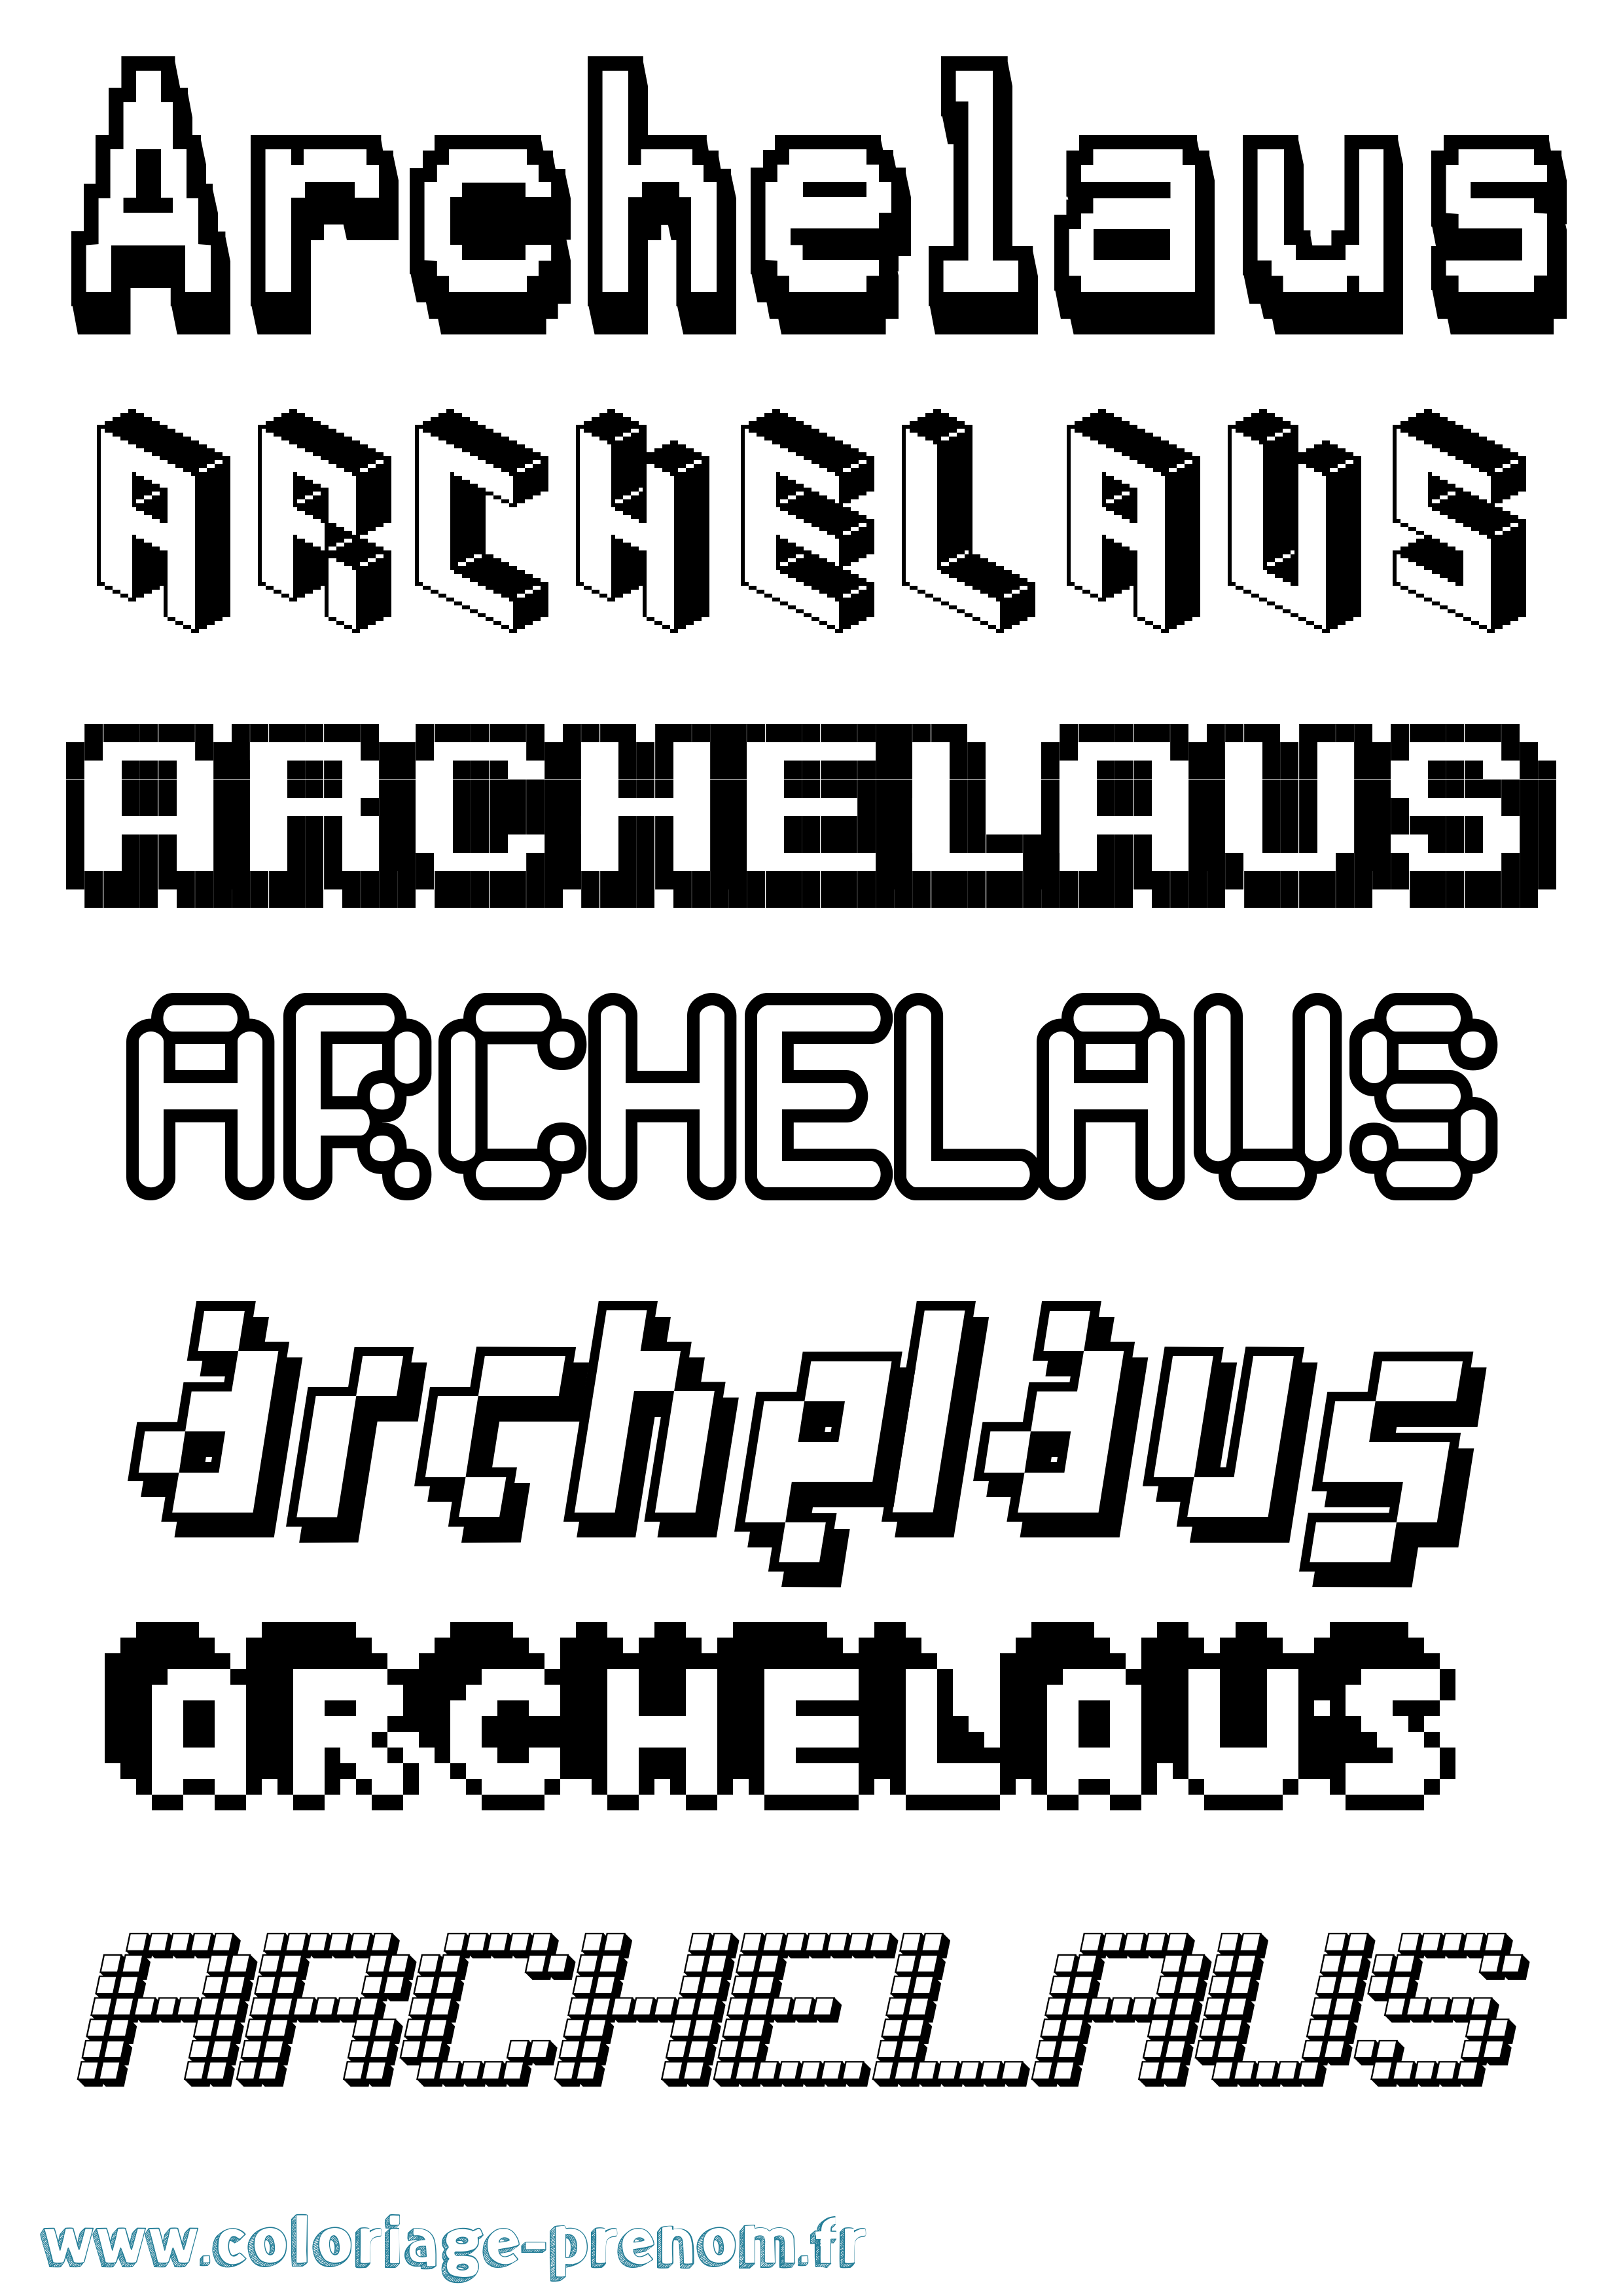 Coloriage prénom Archelaus Pixel